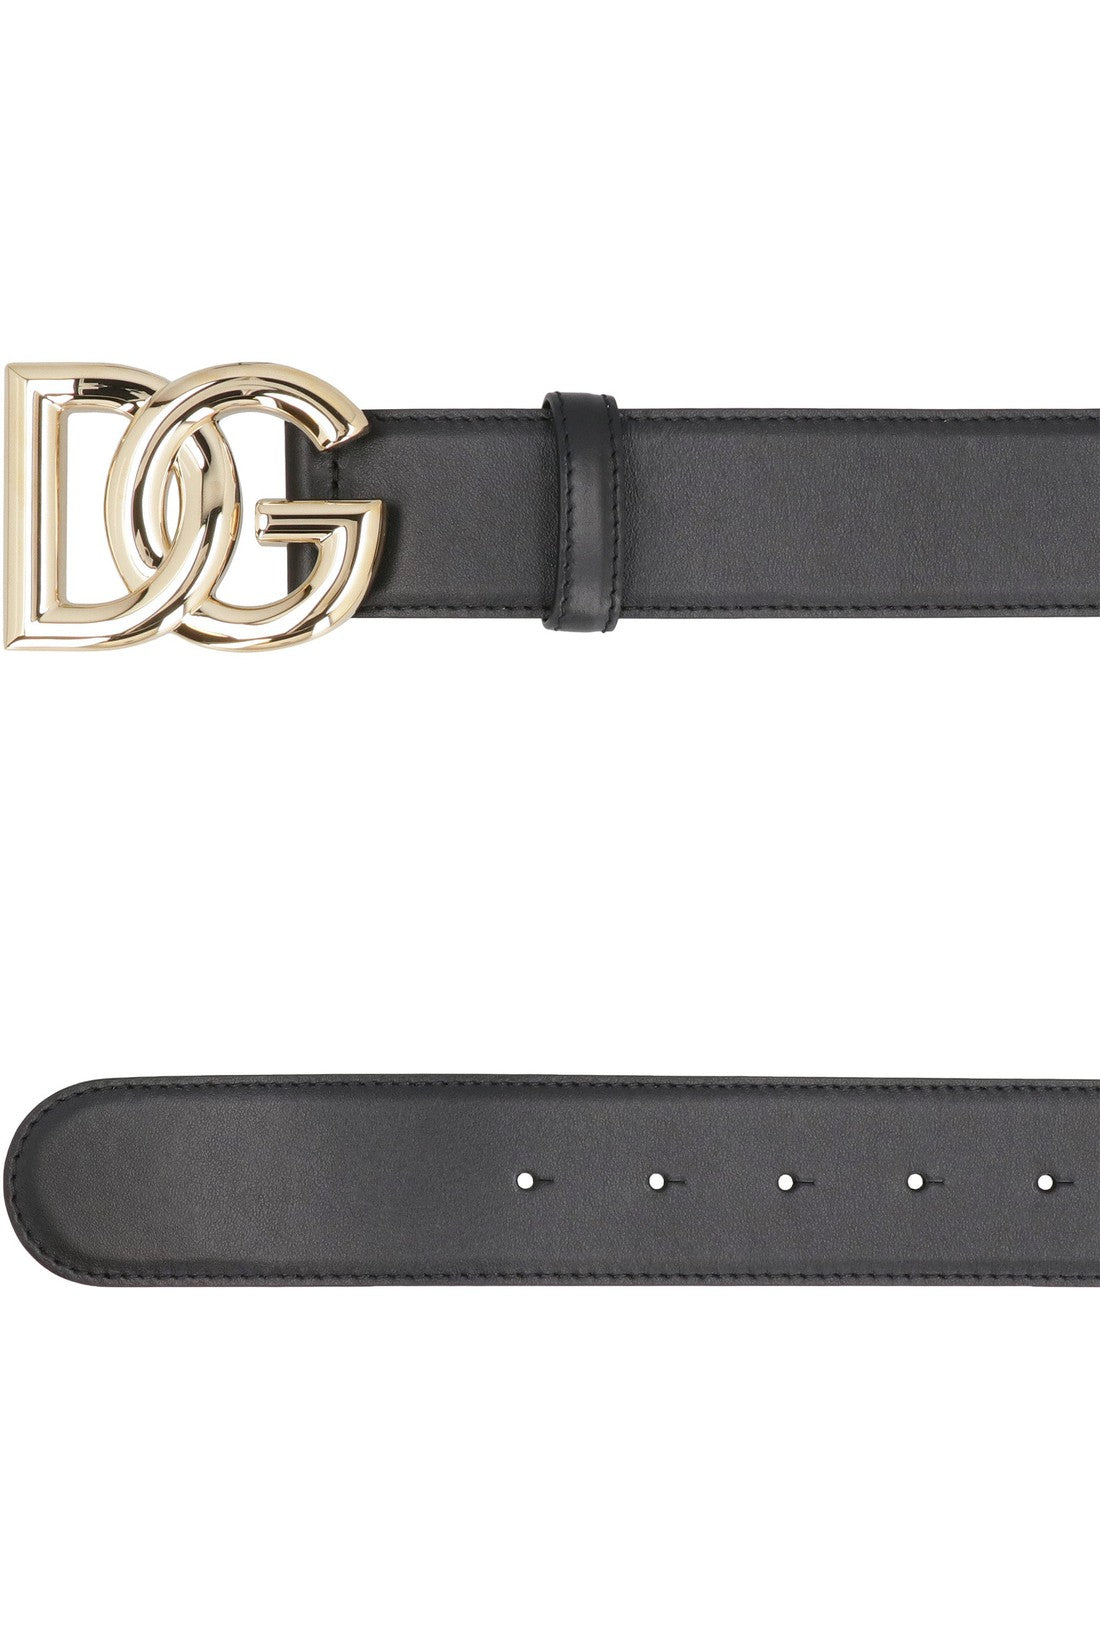 Dolce & Gabbana-OUTLET-SALE-DG buckle leather belt-ARCHIVIST